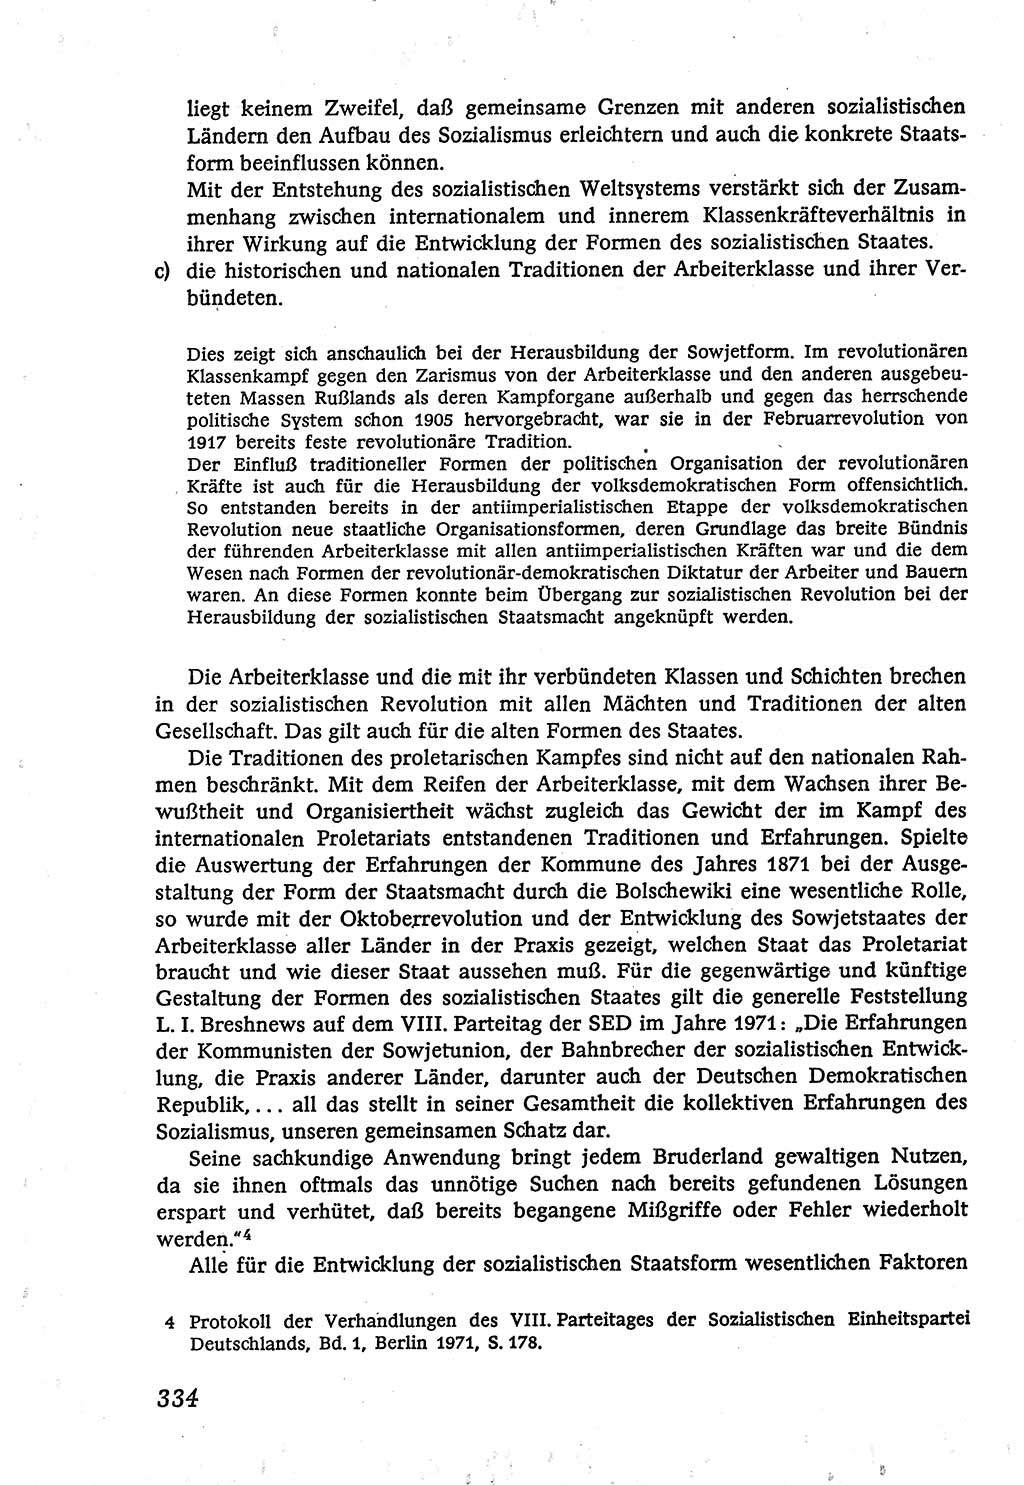 Marxistisch-leninistische (ML) Staats- und Rechtstheorie [Deutsche Demokratische Republik (DDR)], Lehrbuch 1980, Seite 334 (ML St.-R.-Th. DDR Lb. 1980, S. 334)